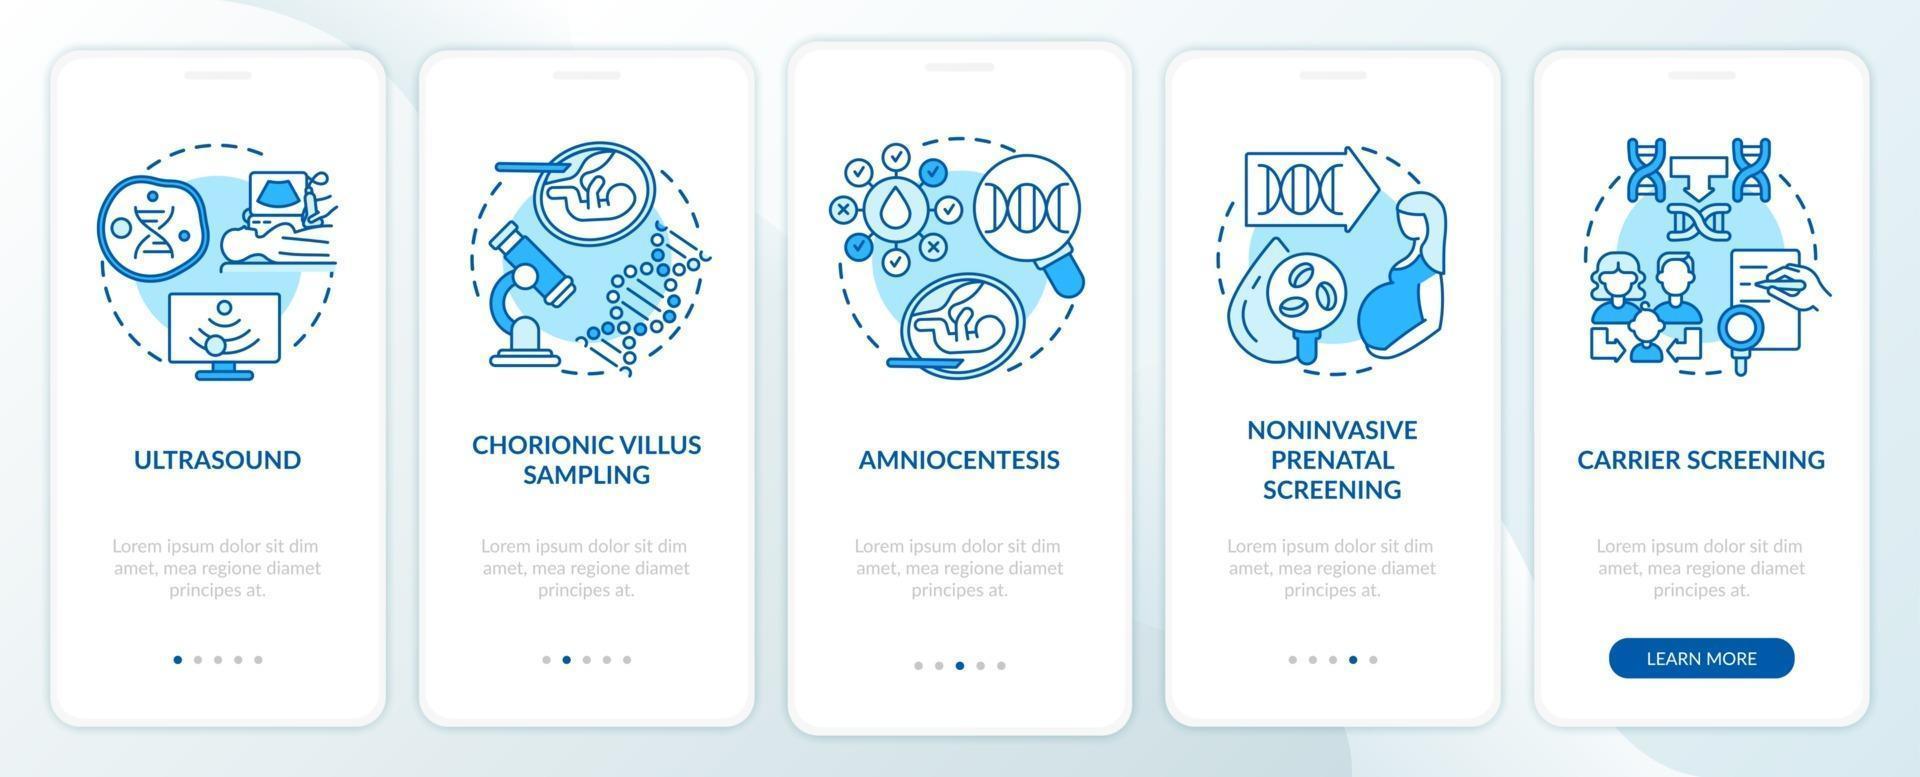 Test de maladies génétiques écran bleu de la page de l'application mobile d'intégration avec des concepts vecteur